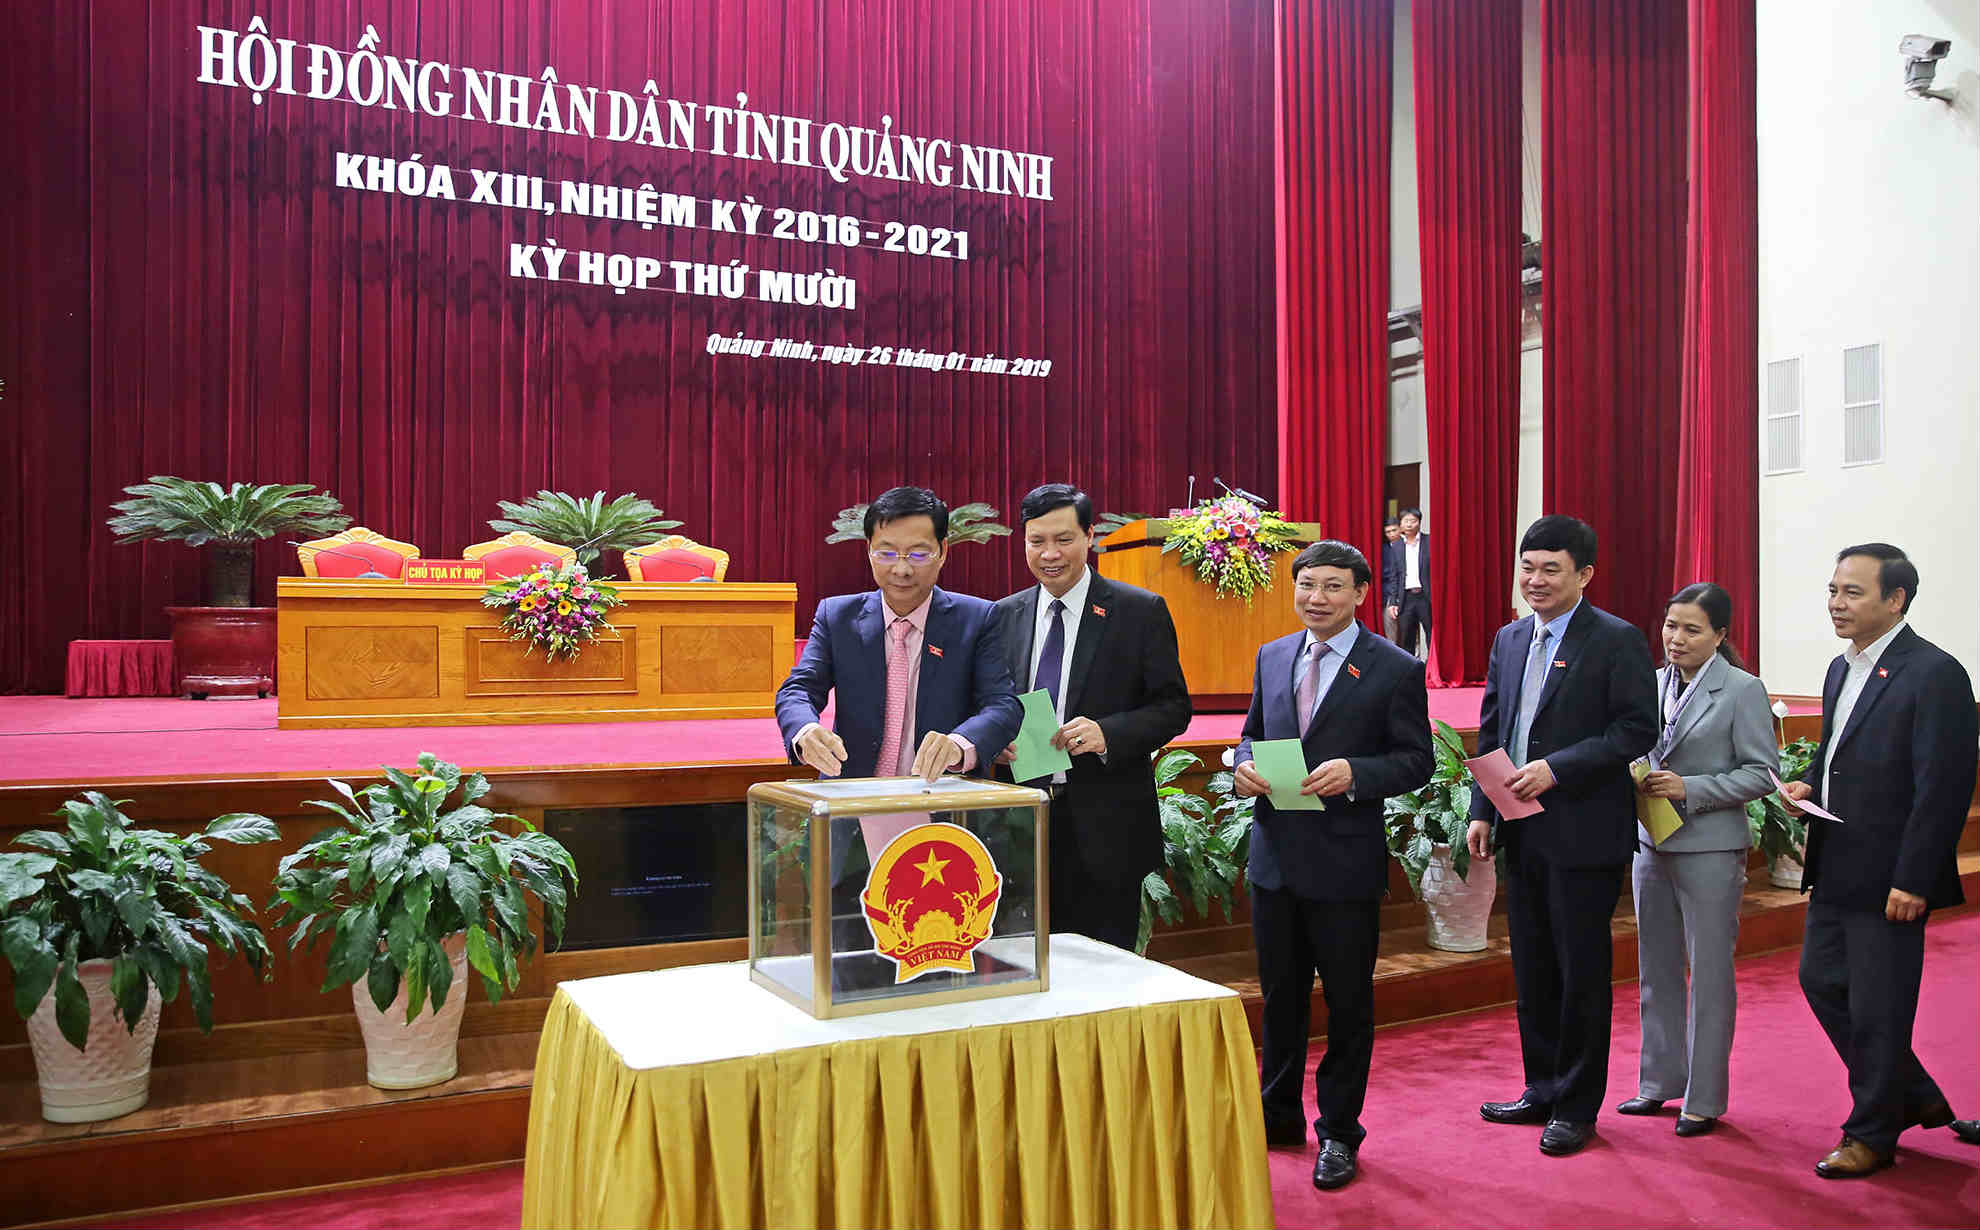 Các đại biểu HĐND tỉnh Quảng Ninh bỏ phiếu bầu bổ sung các chức vụ chủ chốt của HĐND, UBND tỉnh. Ảnh: Hùng Sơn